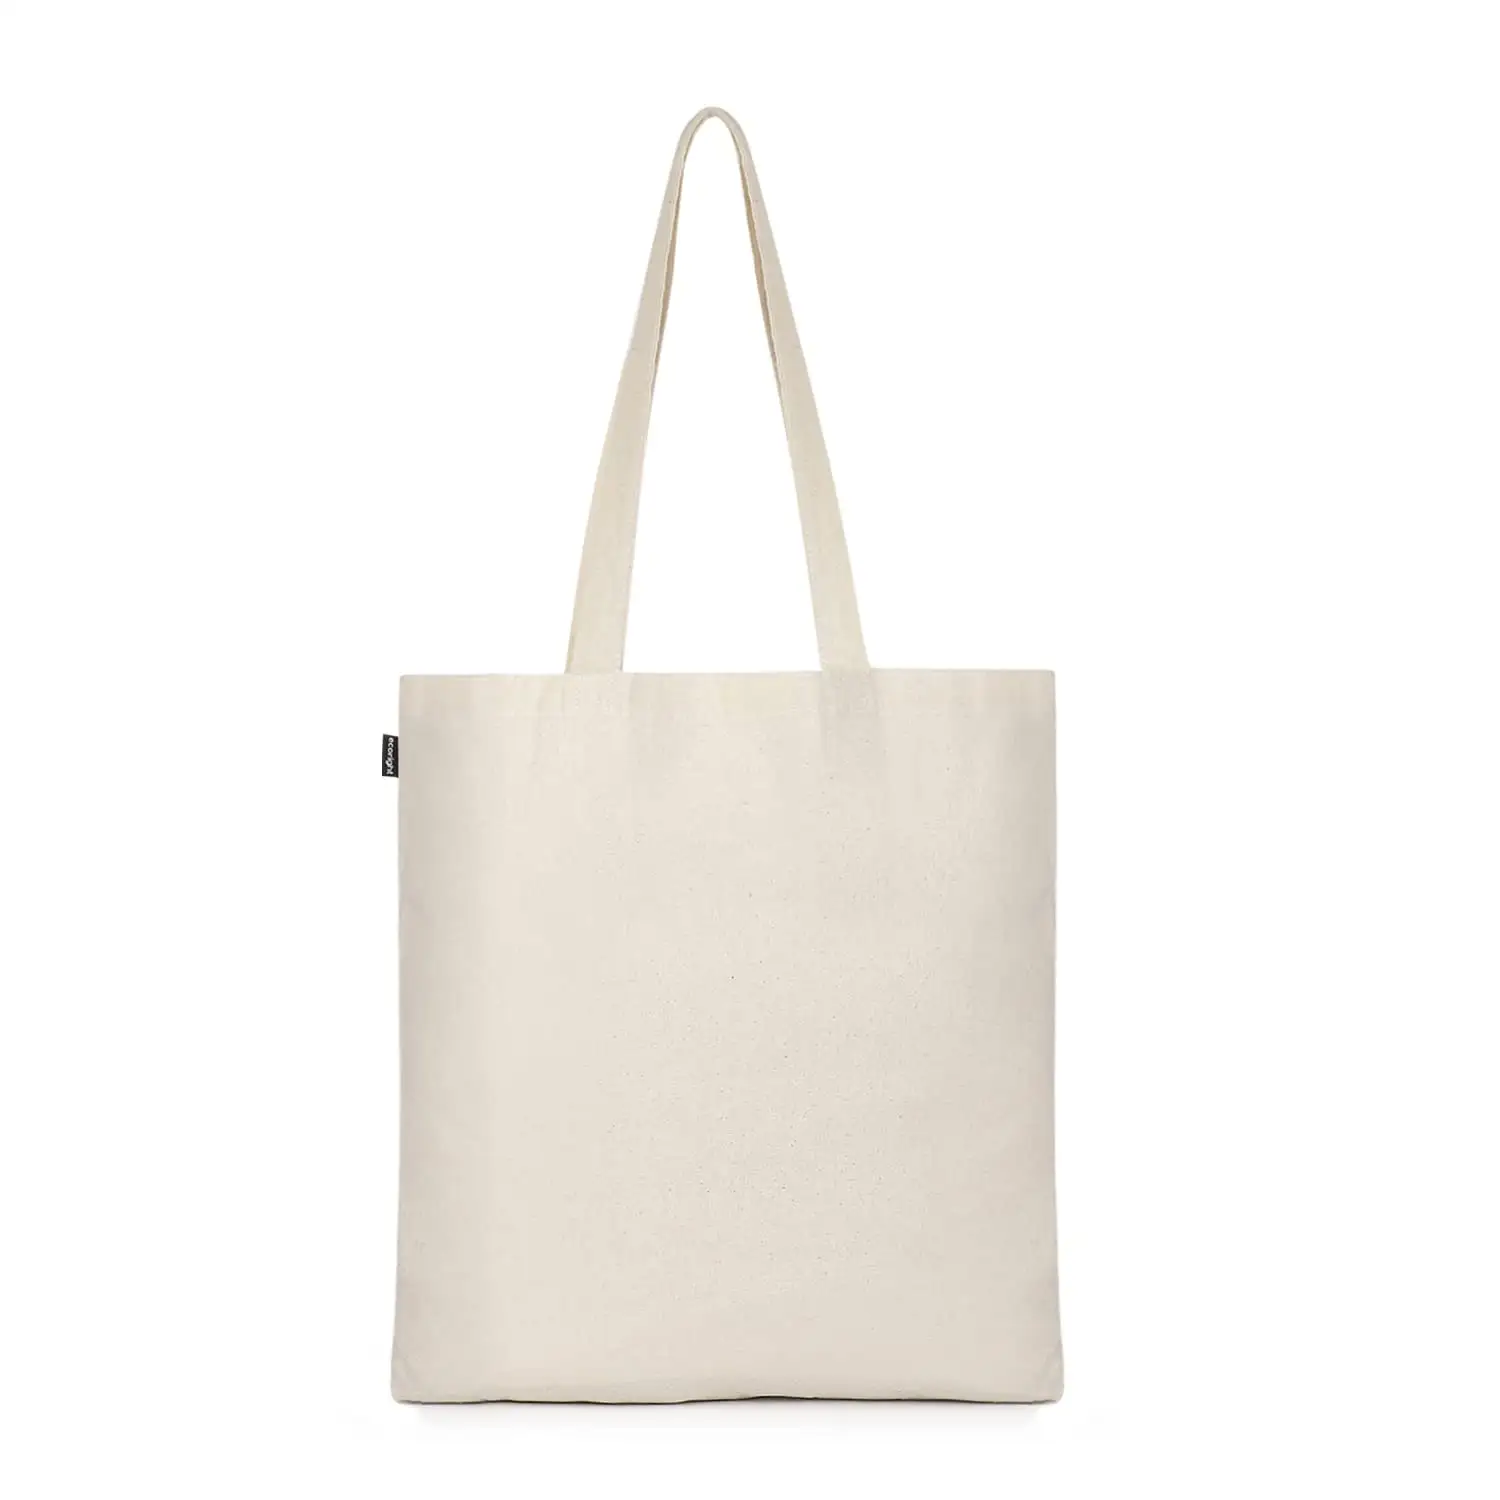 تخفيضات كبيرة على حقيبة كتب KAISEN قطنية من القماش مطبوع عليها شعار مخصص للتسوق للبيع حقيبة كتب جميلة